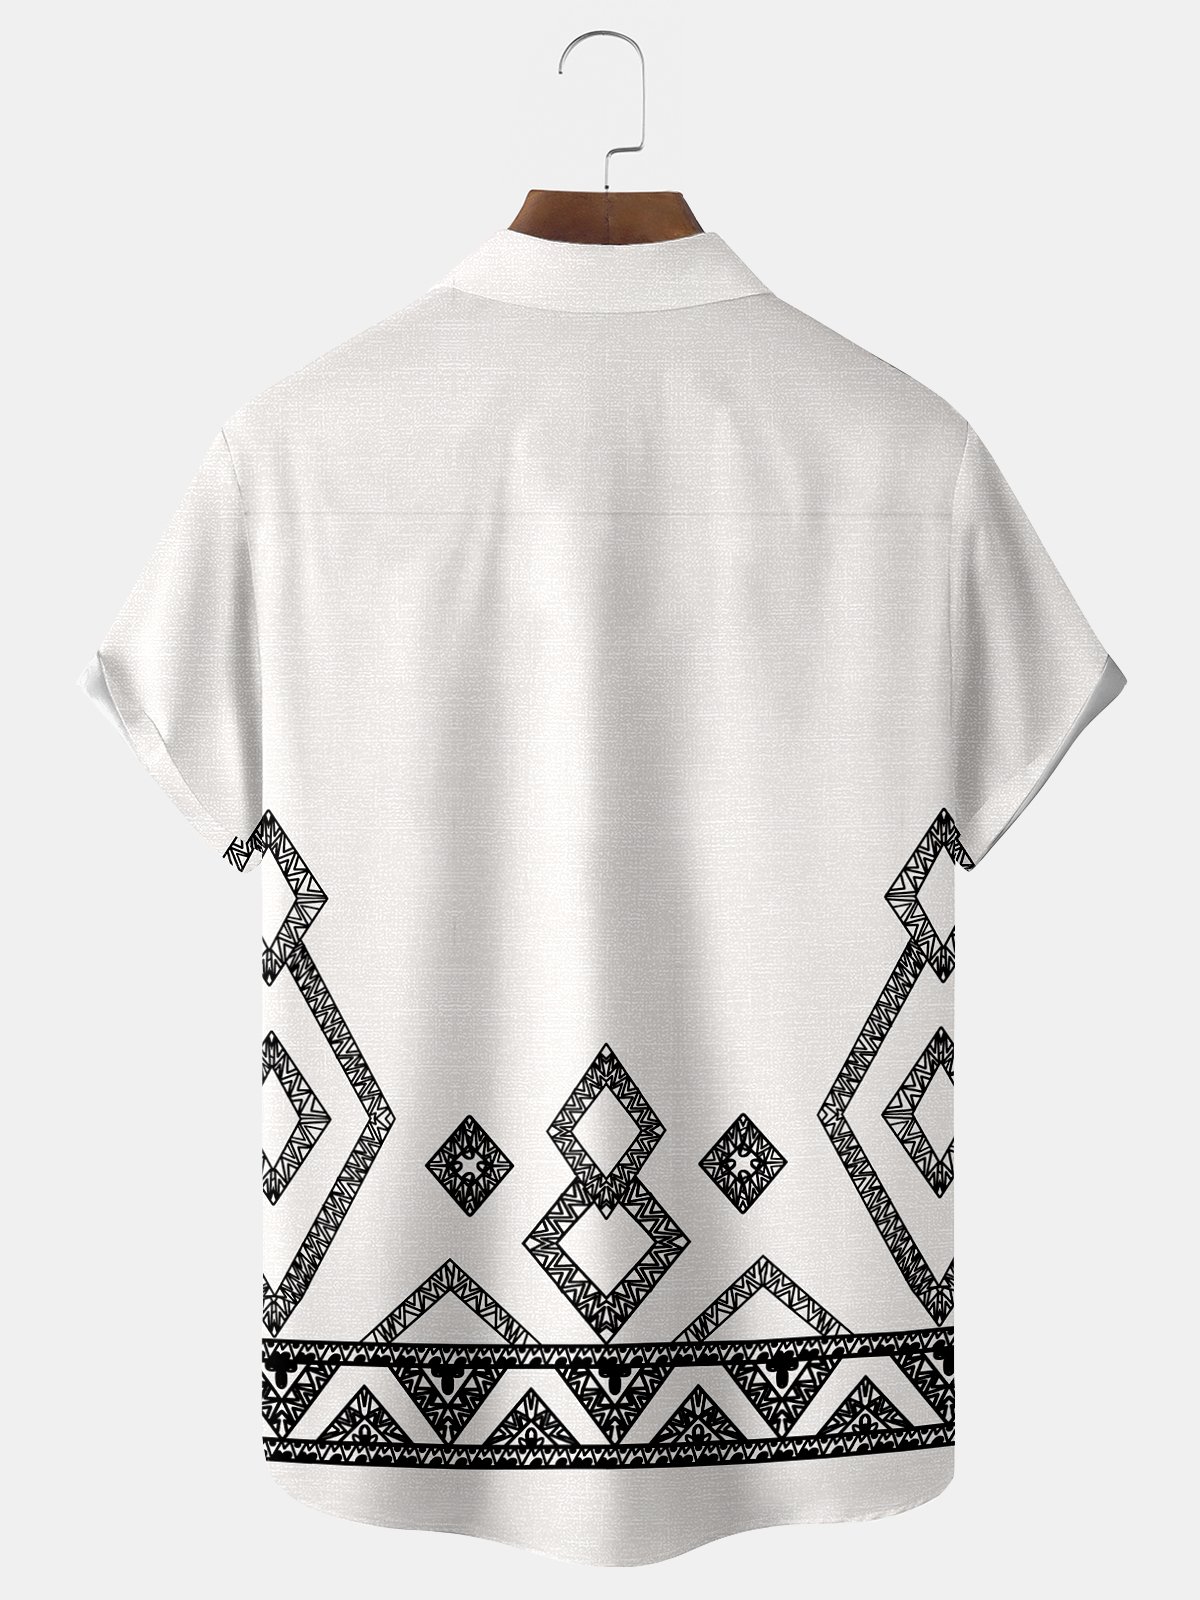 Royaura Basic Geometry Print Men's Hawaiian Oversized Shirt with Pockets